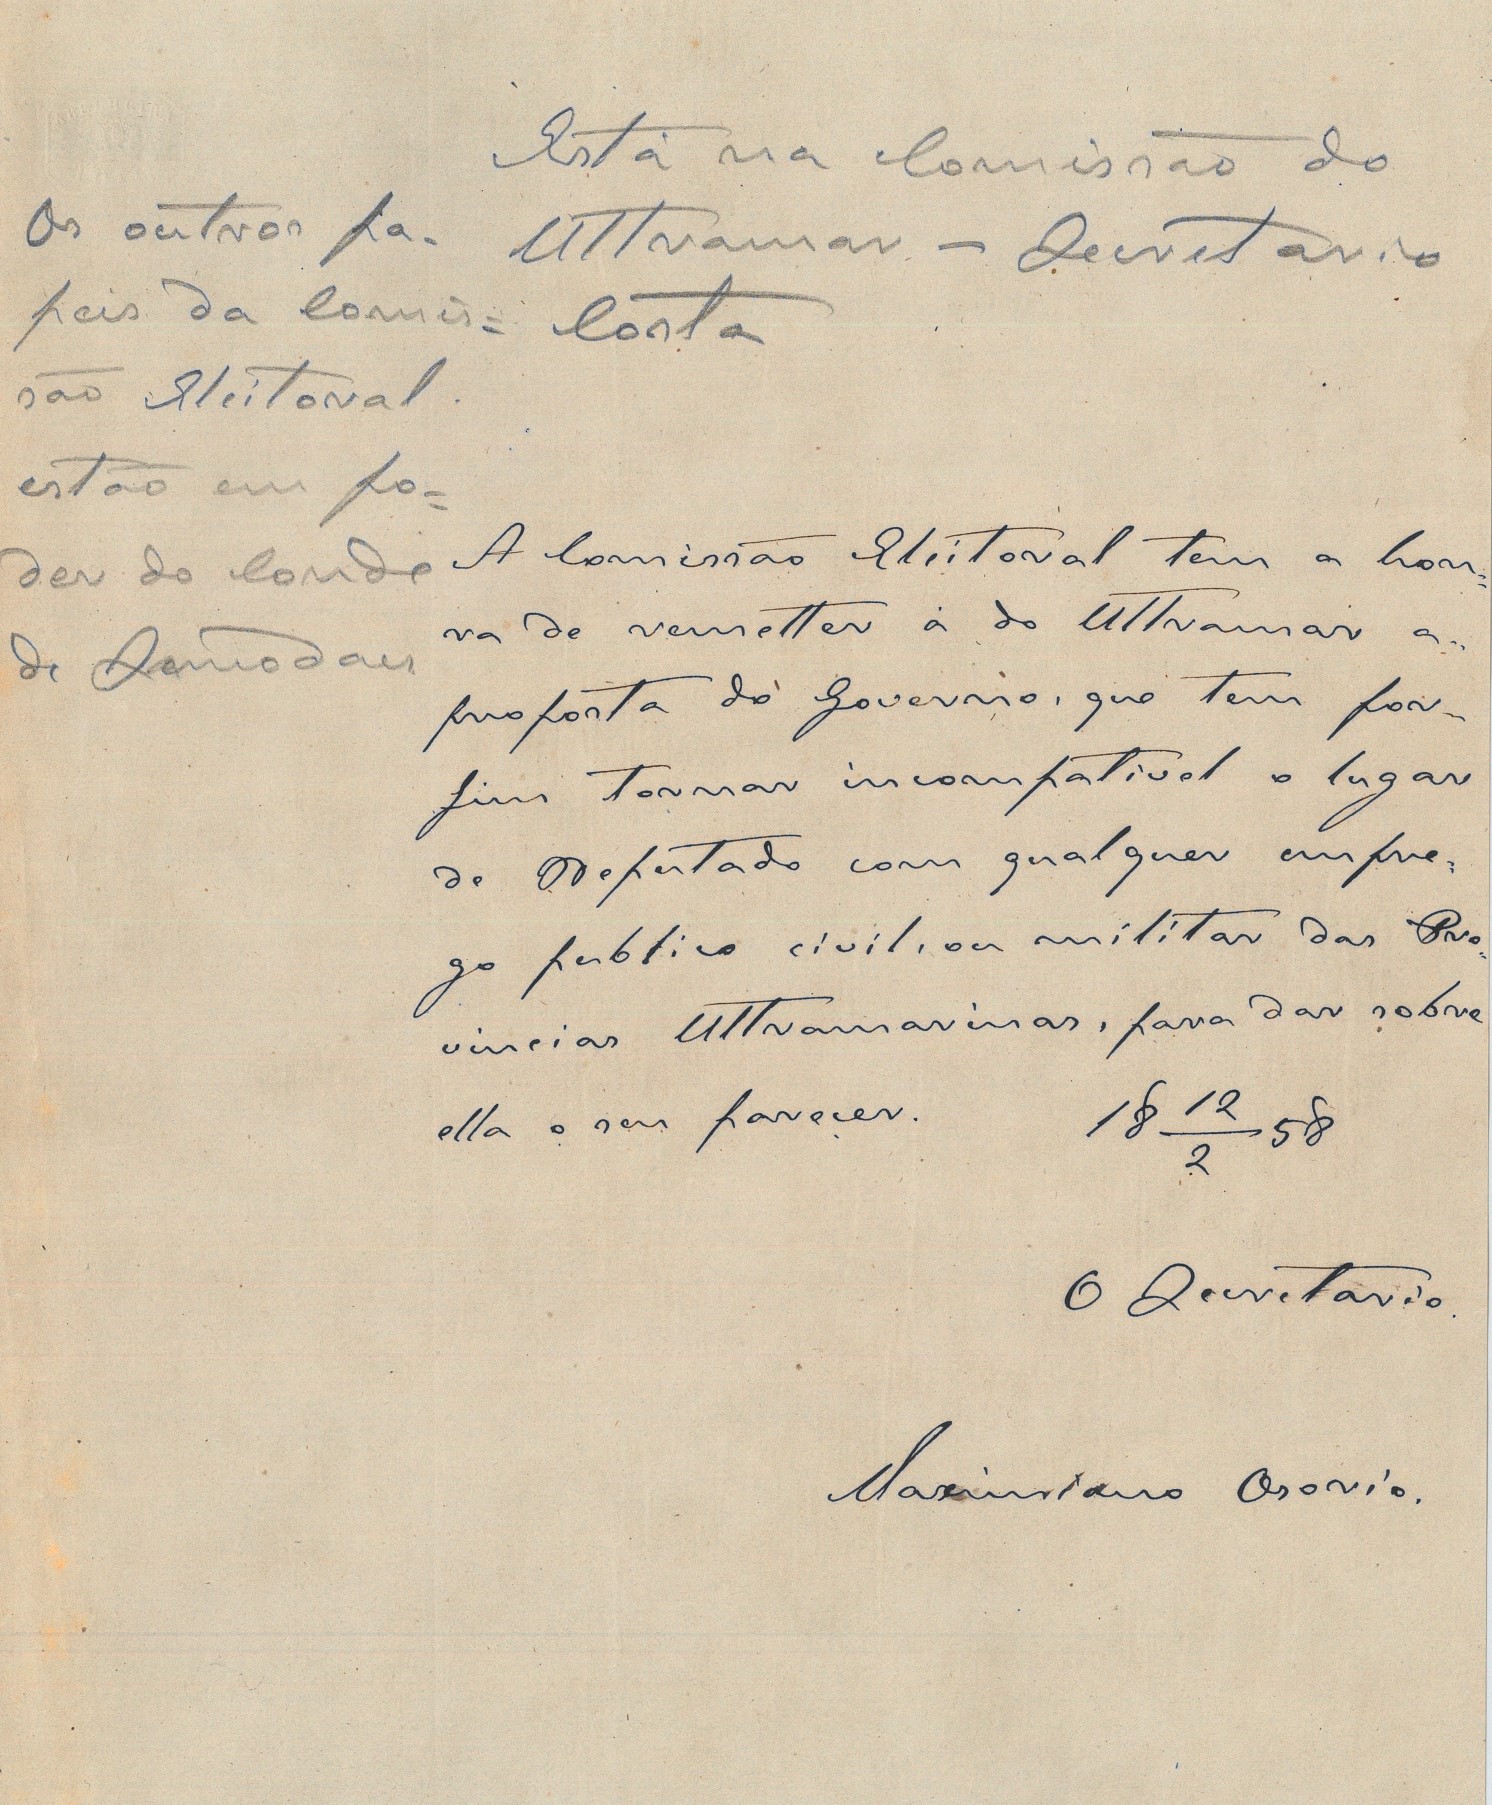 Ofício, datado de 12 de fevereiro de 1858, redigido pelo secretário da Comissão, Maximiano Osório, em que indica que a Comissão eleitoral remete à Comissão do Ultramar, para dar parecer, uma proposta do Governo de 